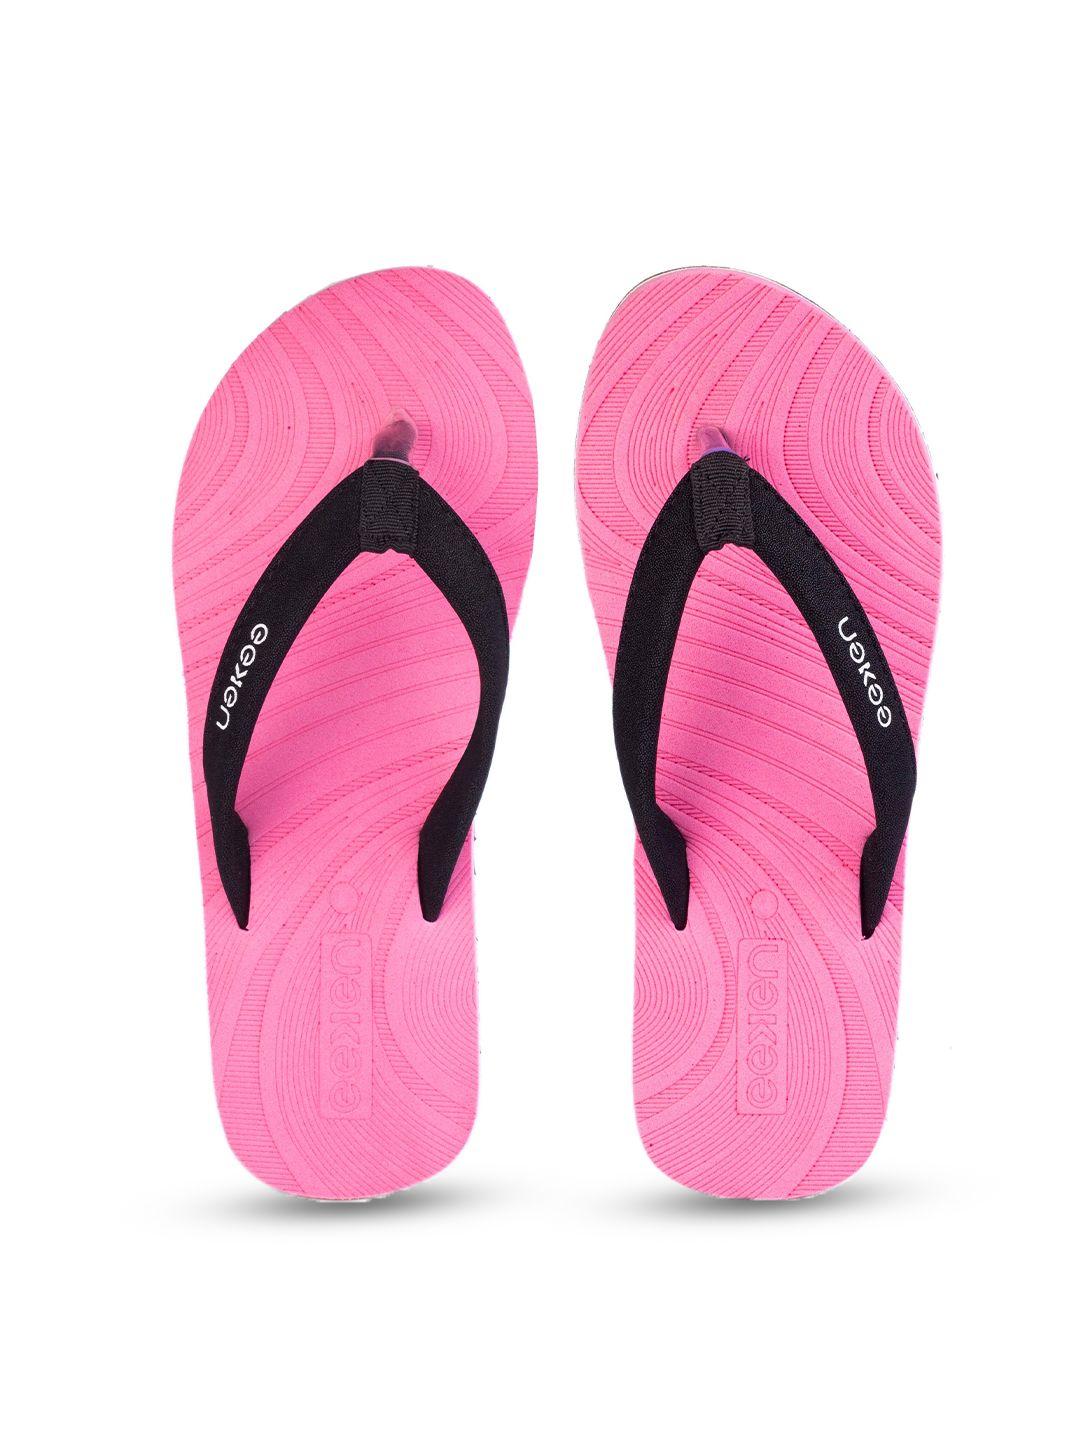 paragon eeken women rubber anti-skid lightweight thong flip-flops